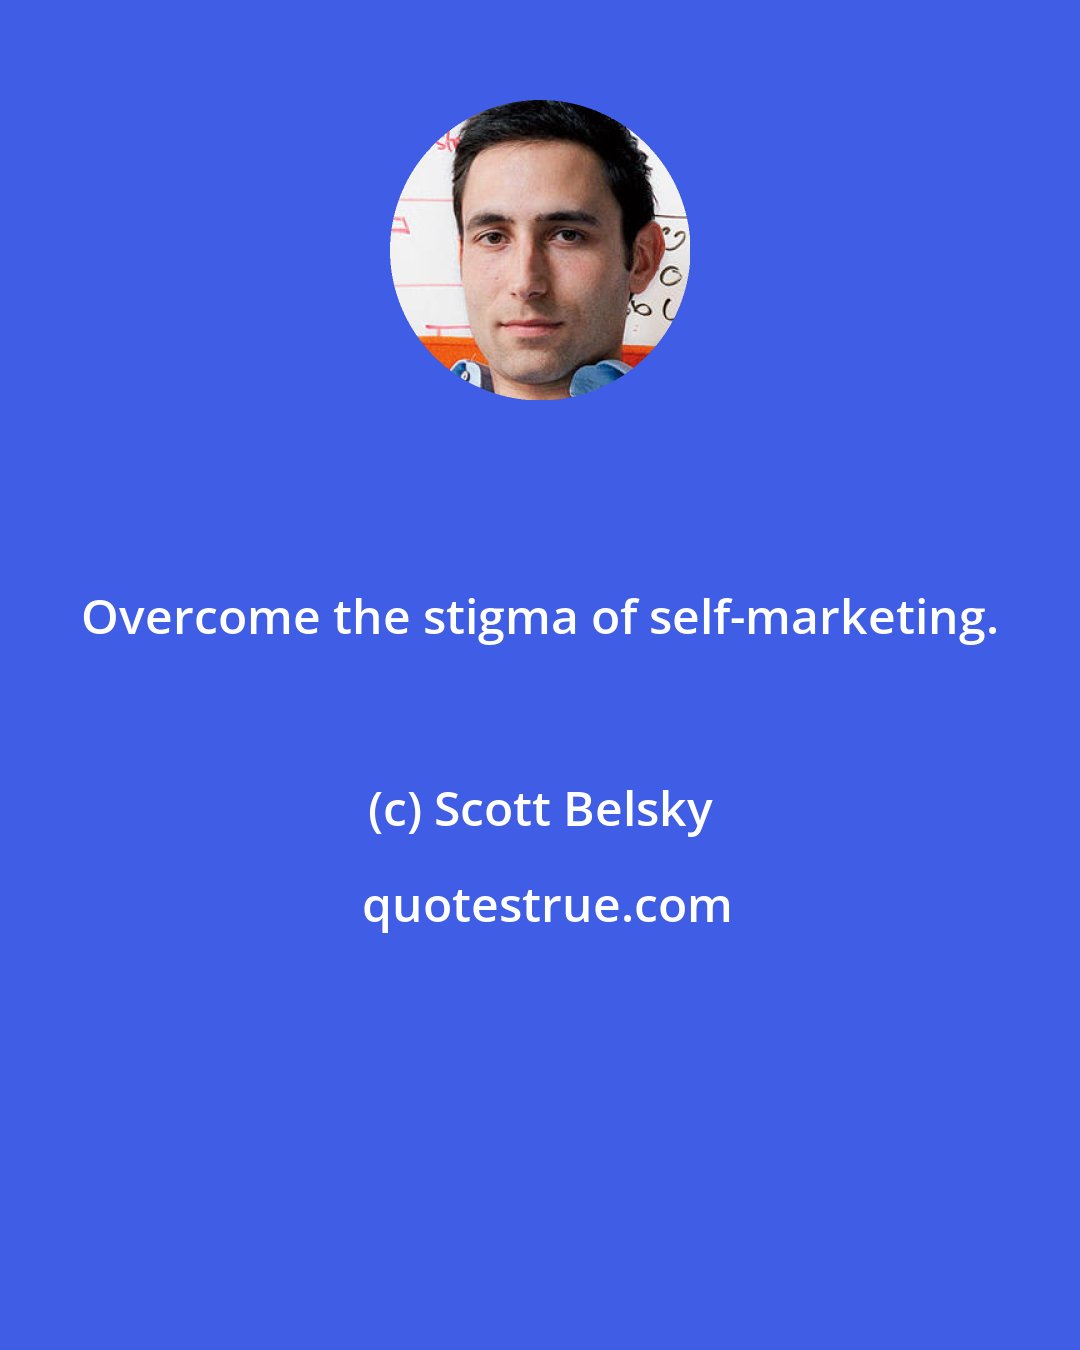 Scott Belsky: Overcome the stigma of self-marketing.